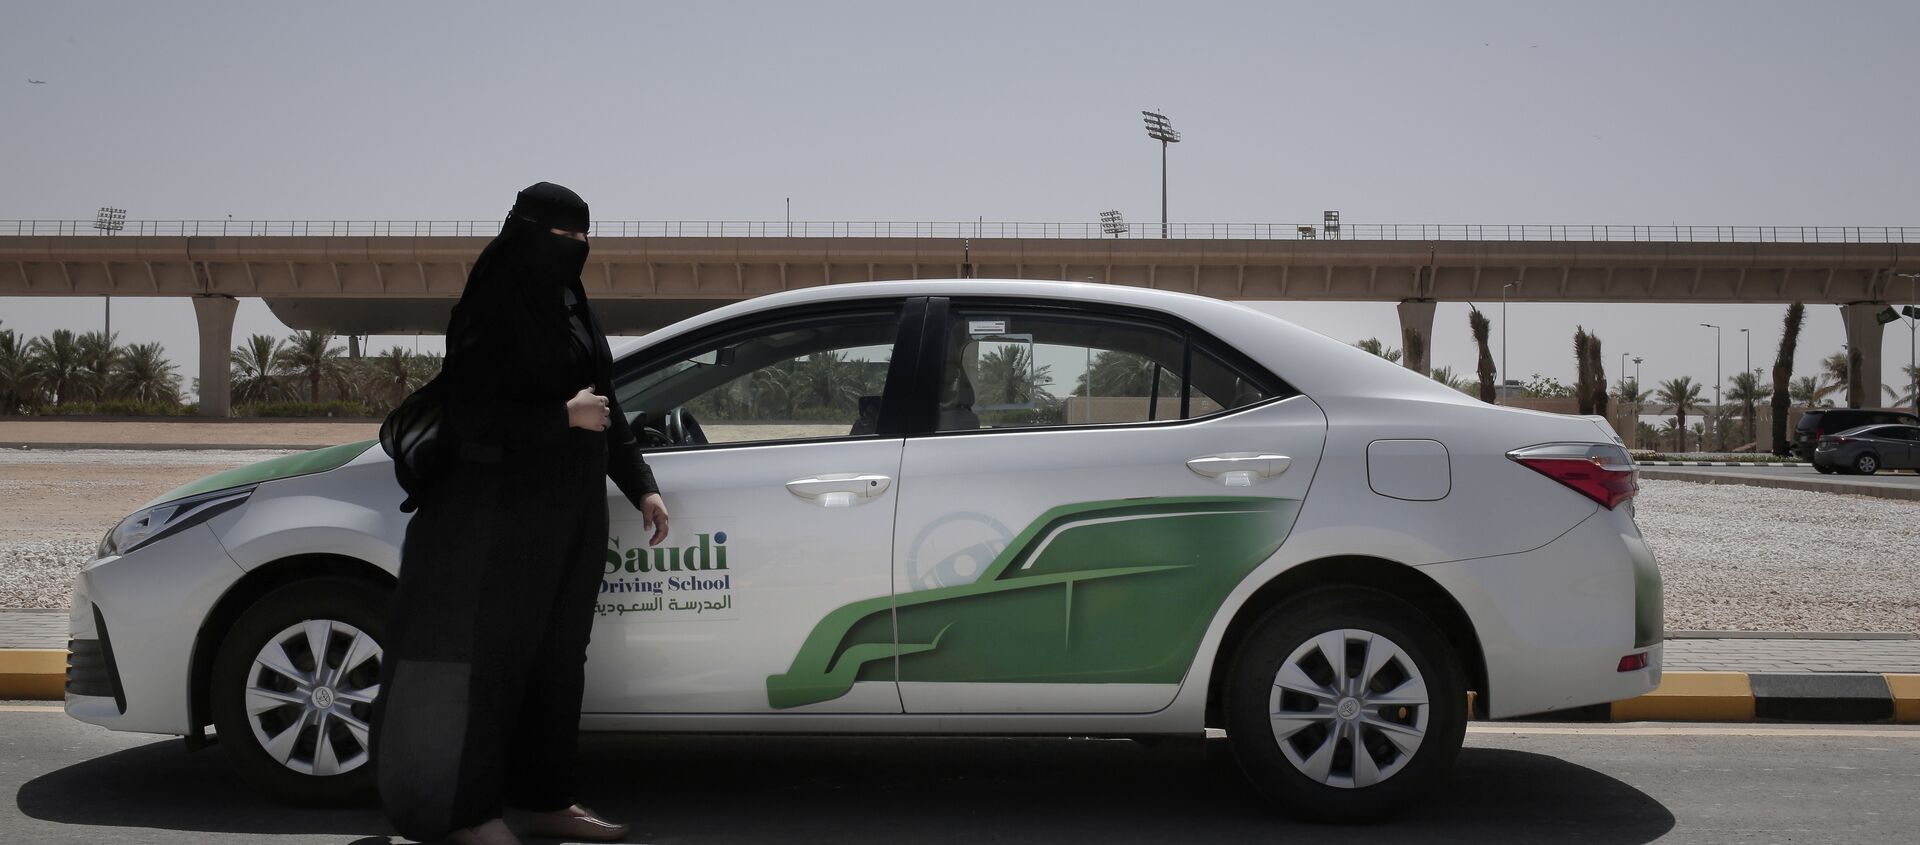 قيادة المرأة السعودية للسيارة، الرياض، 23 يونيو/ حزيران 2018 - سبوتنيك عربي, 1920, 26.08.2021